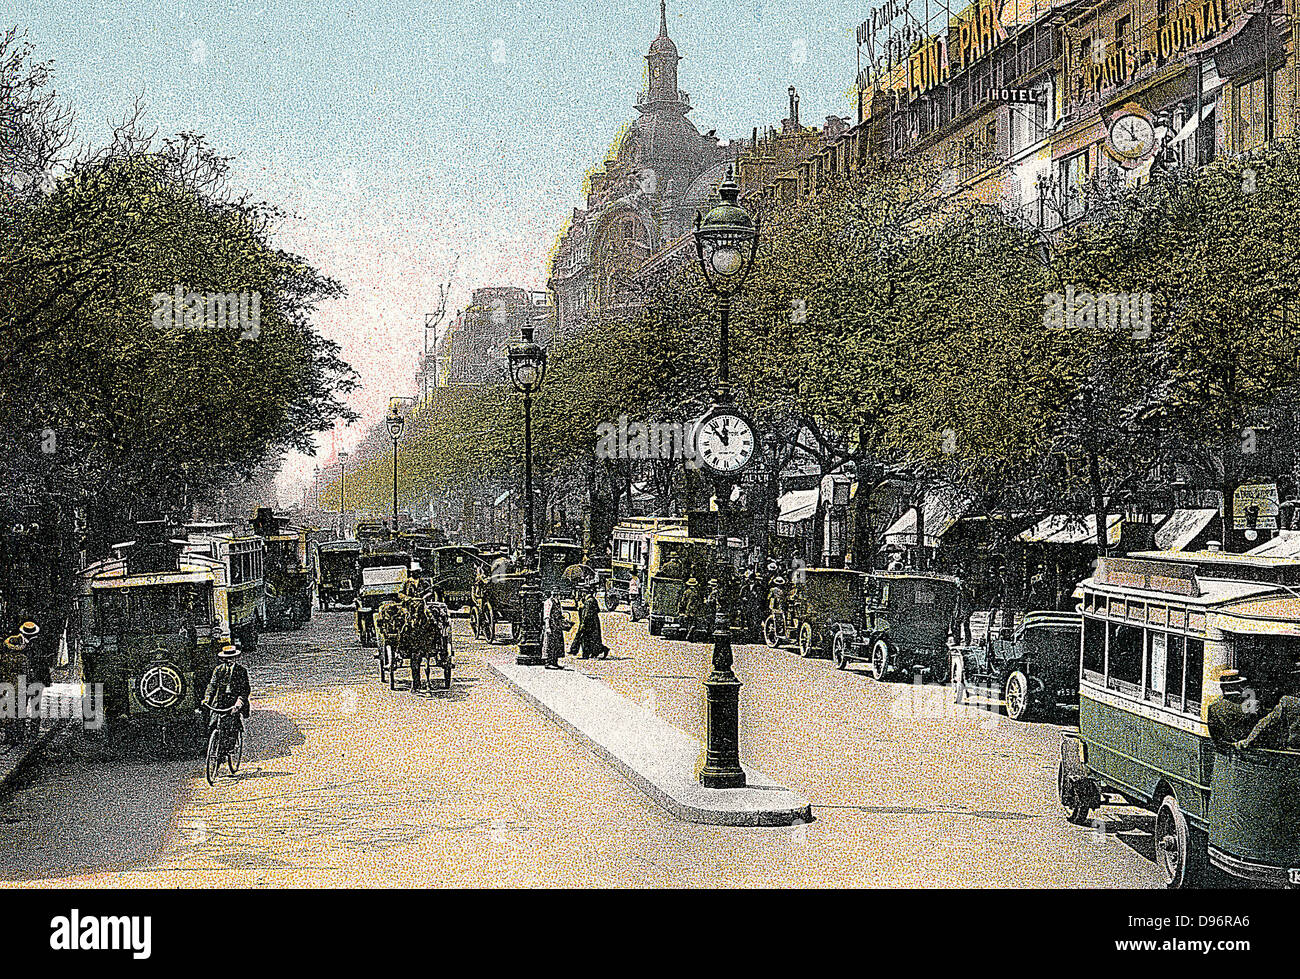 Paris c1900. Boulevard des Italiens avec des voitures et autobus. Lithographie teintée. Banque D'Images